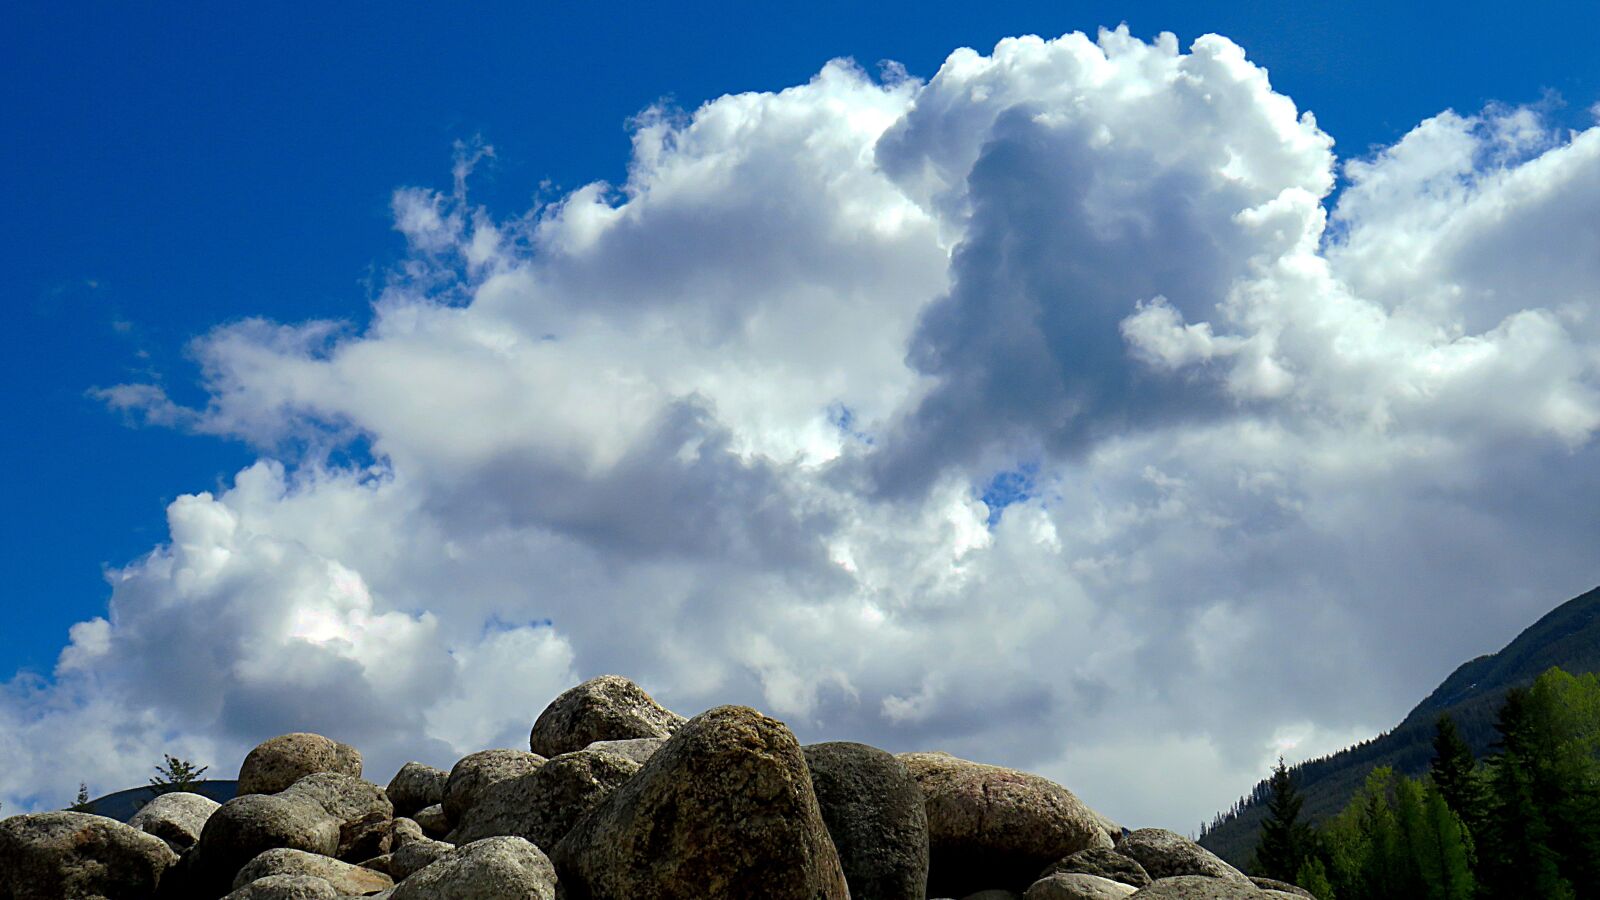 Canon PowerShot SX540 HS + 4.3 - 215.0 mm sample photo. Landscape, clouds, cloud formation photography